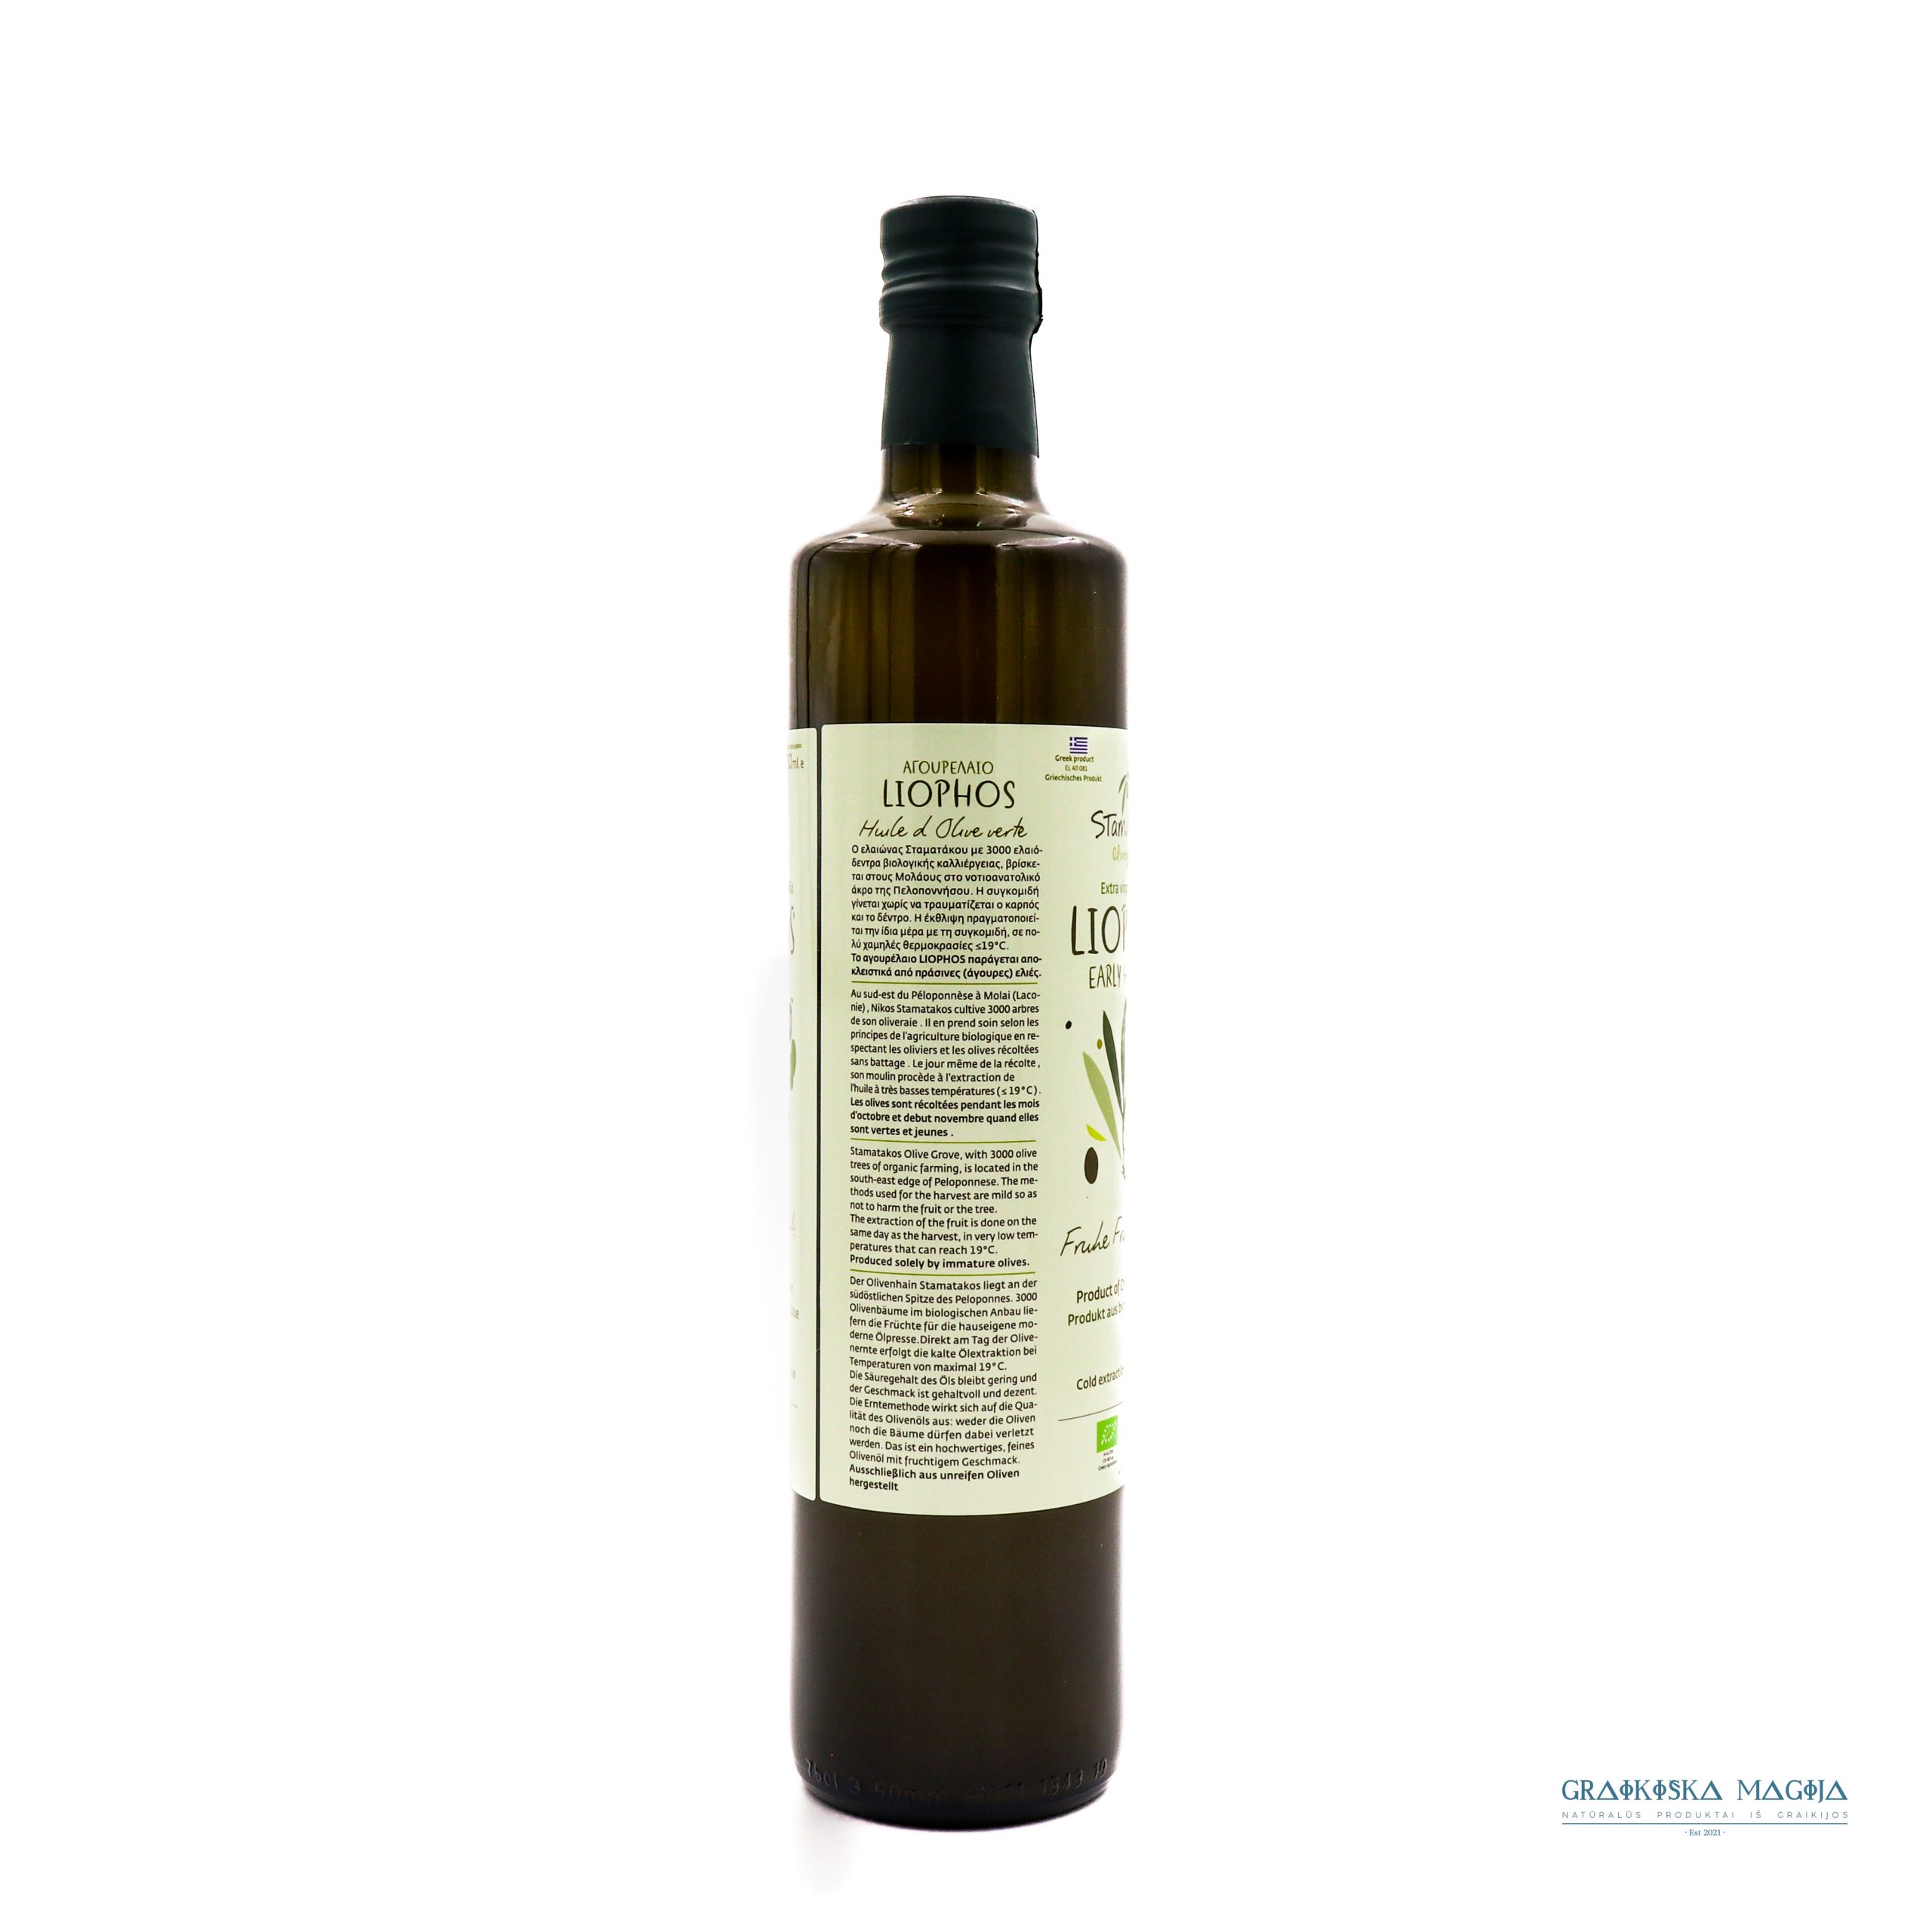 Nefiltruotas ekologiškas alyvuogių aliejus „"Liophos Early Harvest", 750 ml